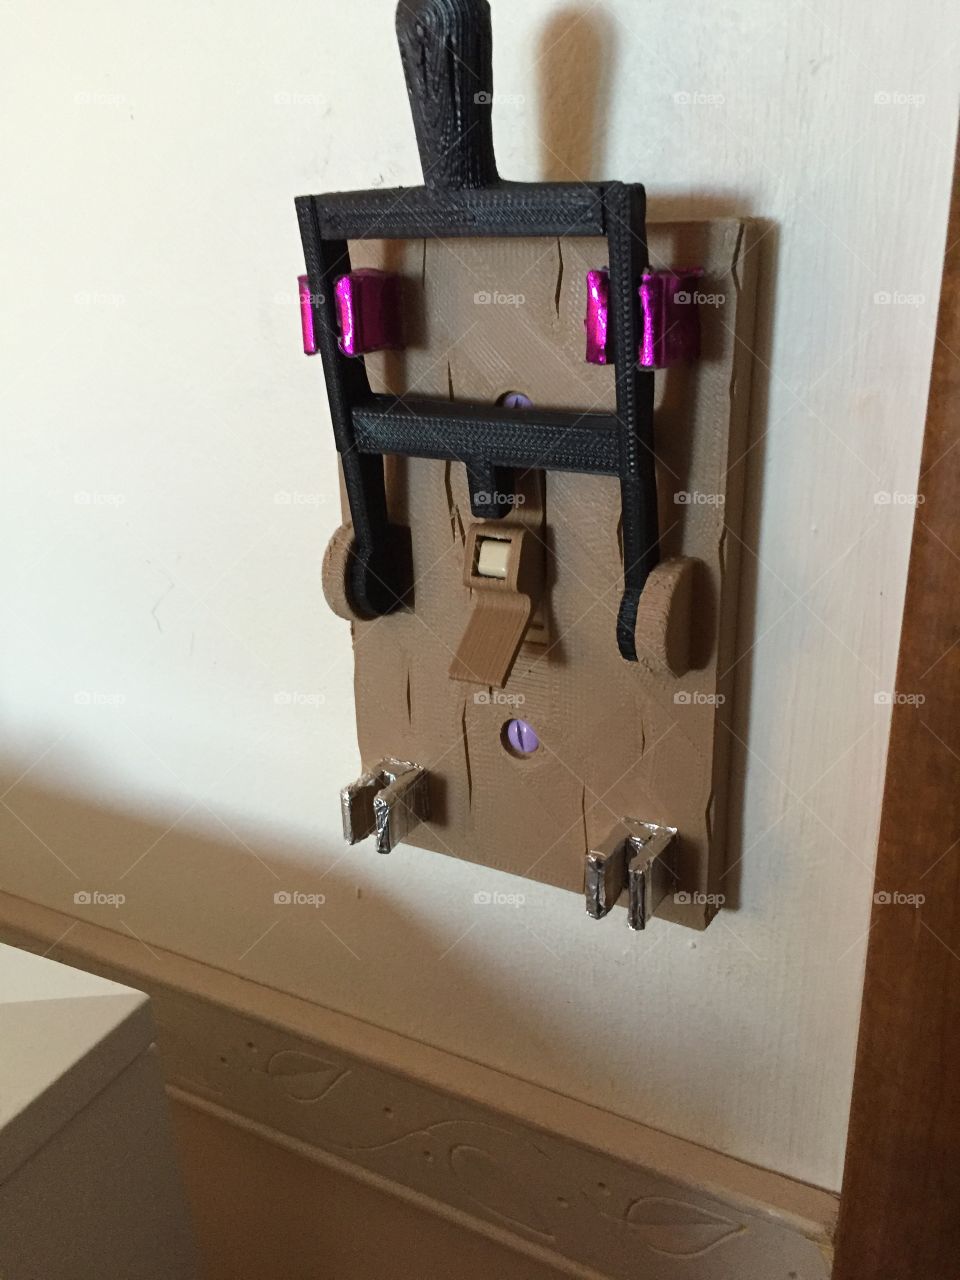 Frankenstein light switch
